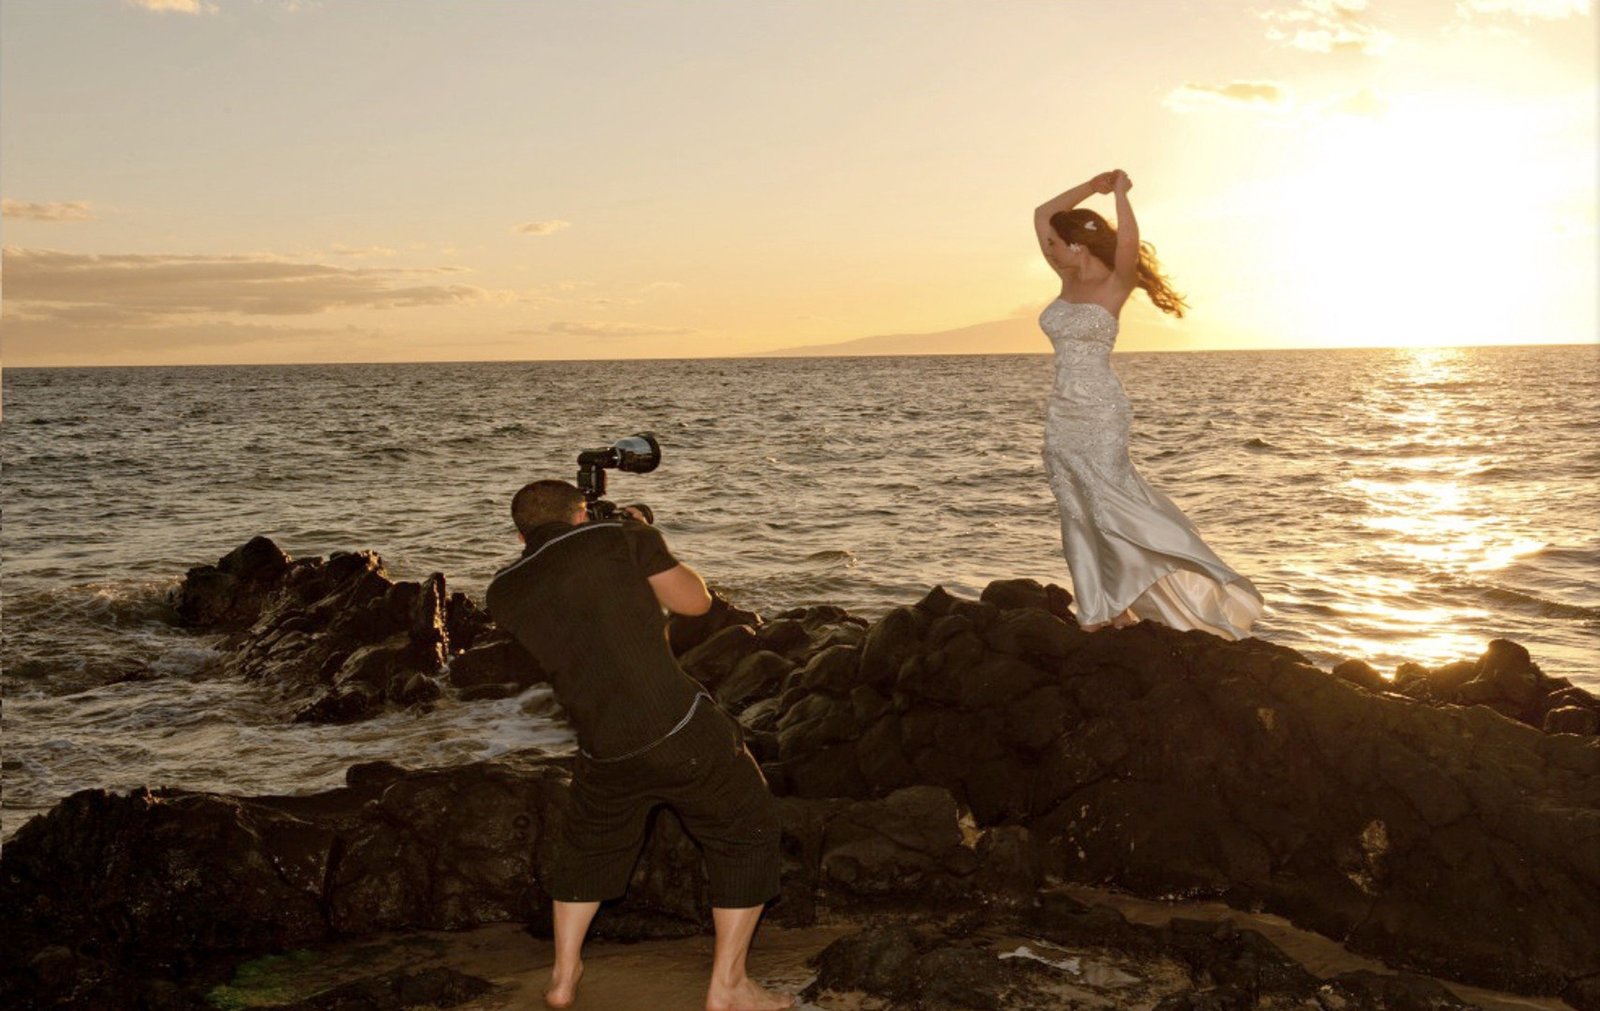 Maui photographers | Kauai photographers | Oahu photographers | Big Island photographers | Honolulu photographers | Waikiki photographers